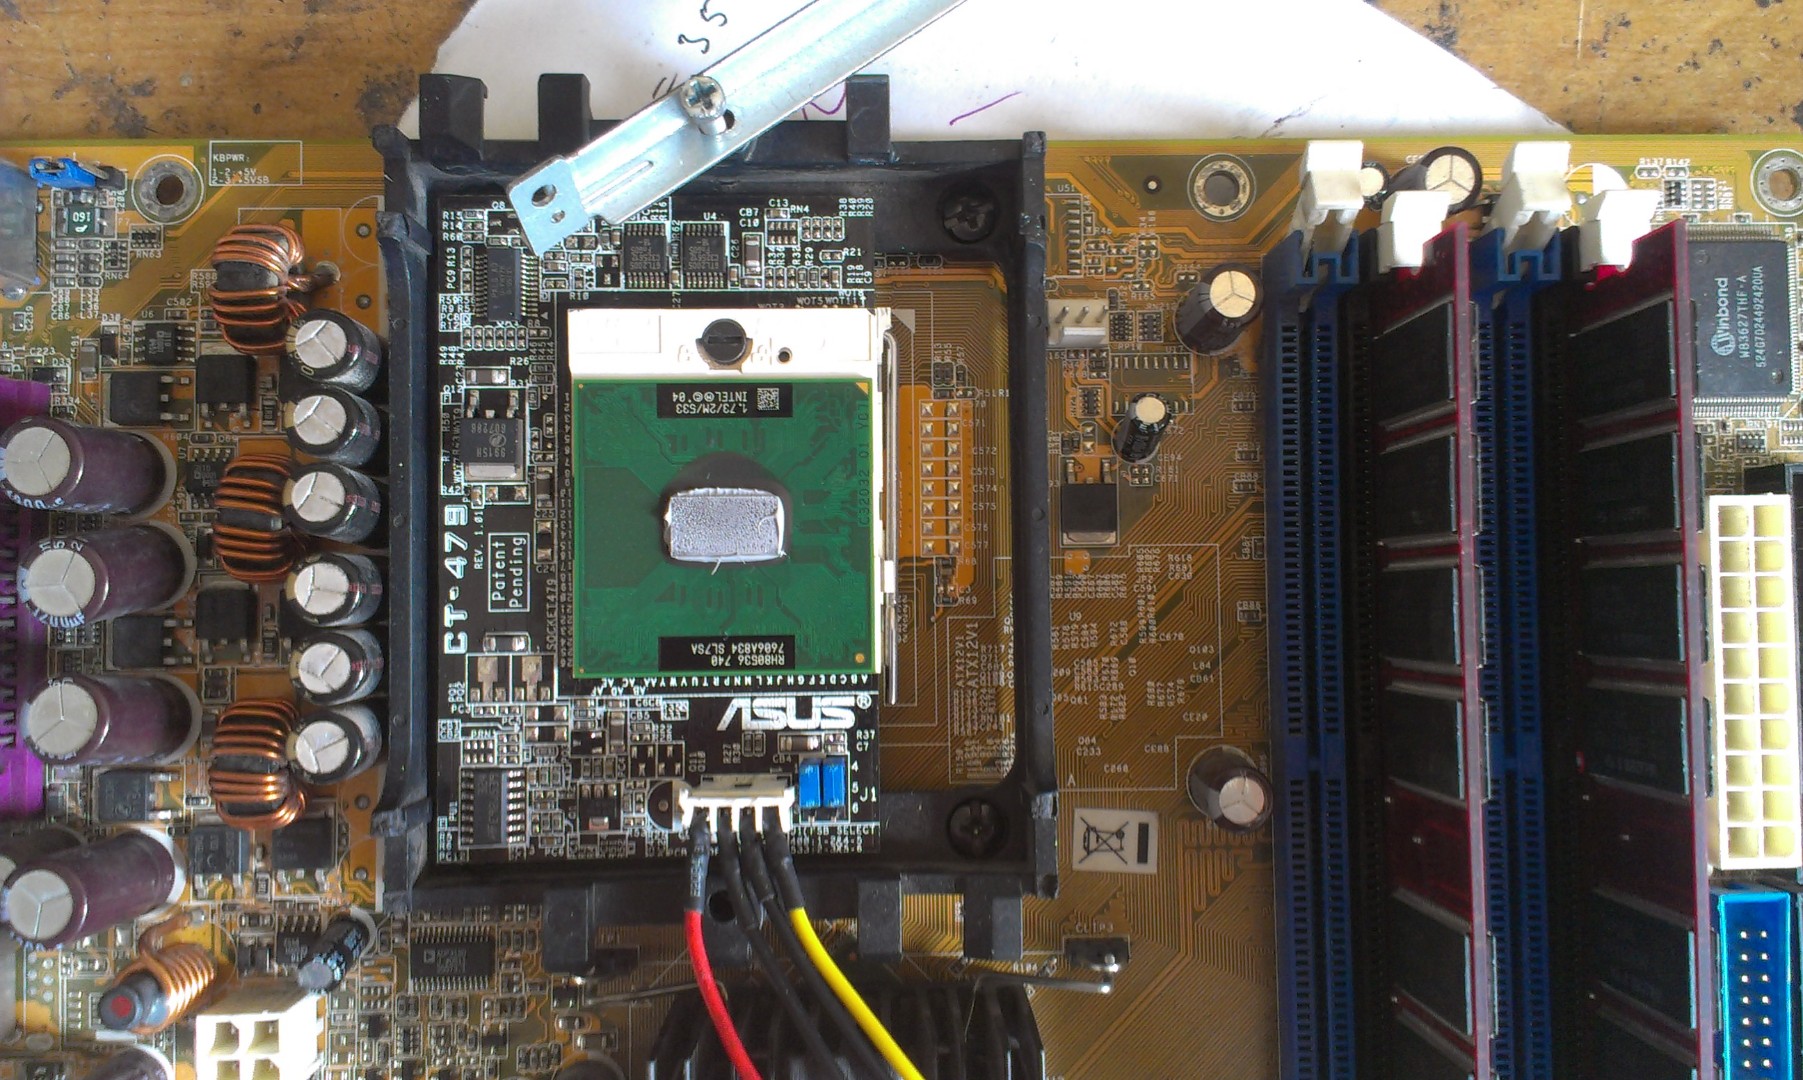 ASUS P4P800-E deluxe CT-479 CPU Intel Pentium M 740 rh80536 kanfa720.com